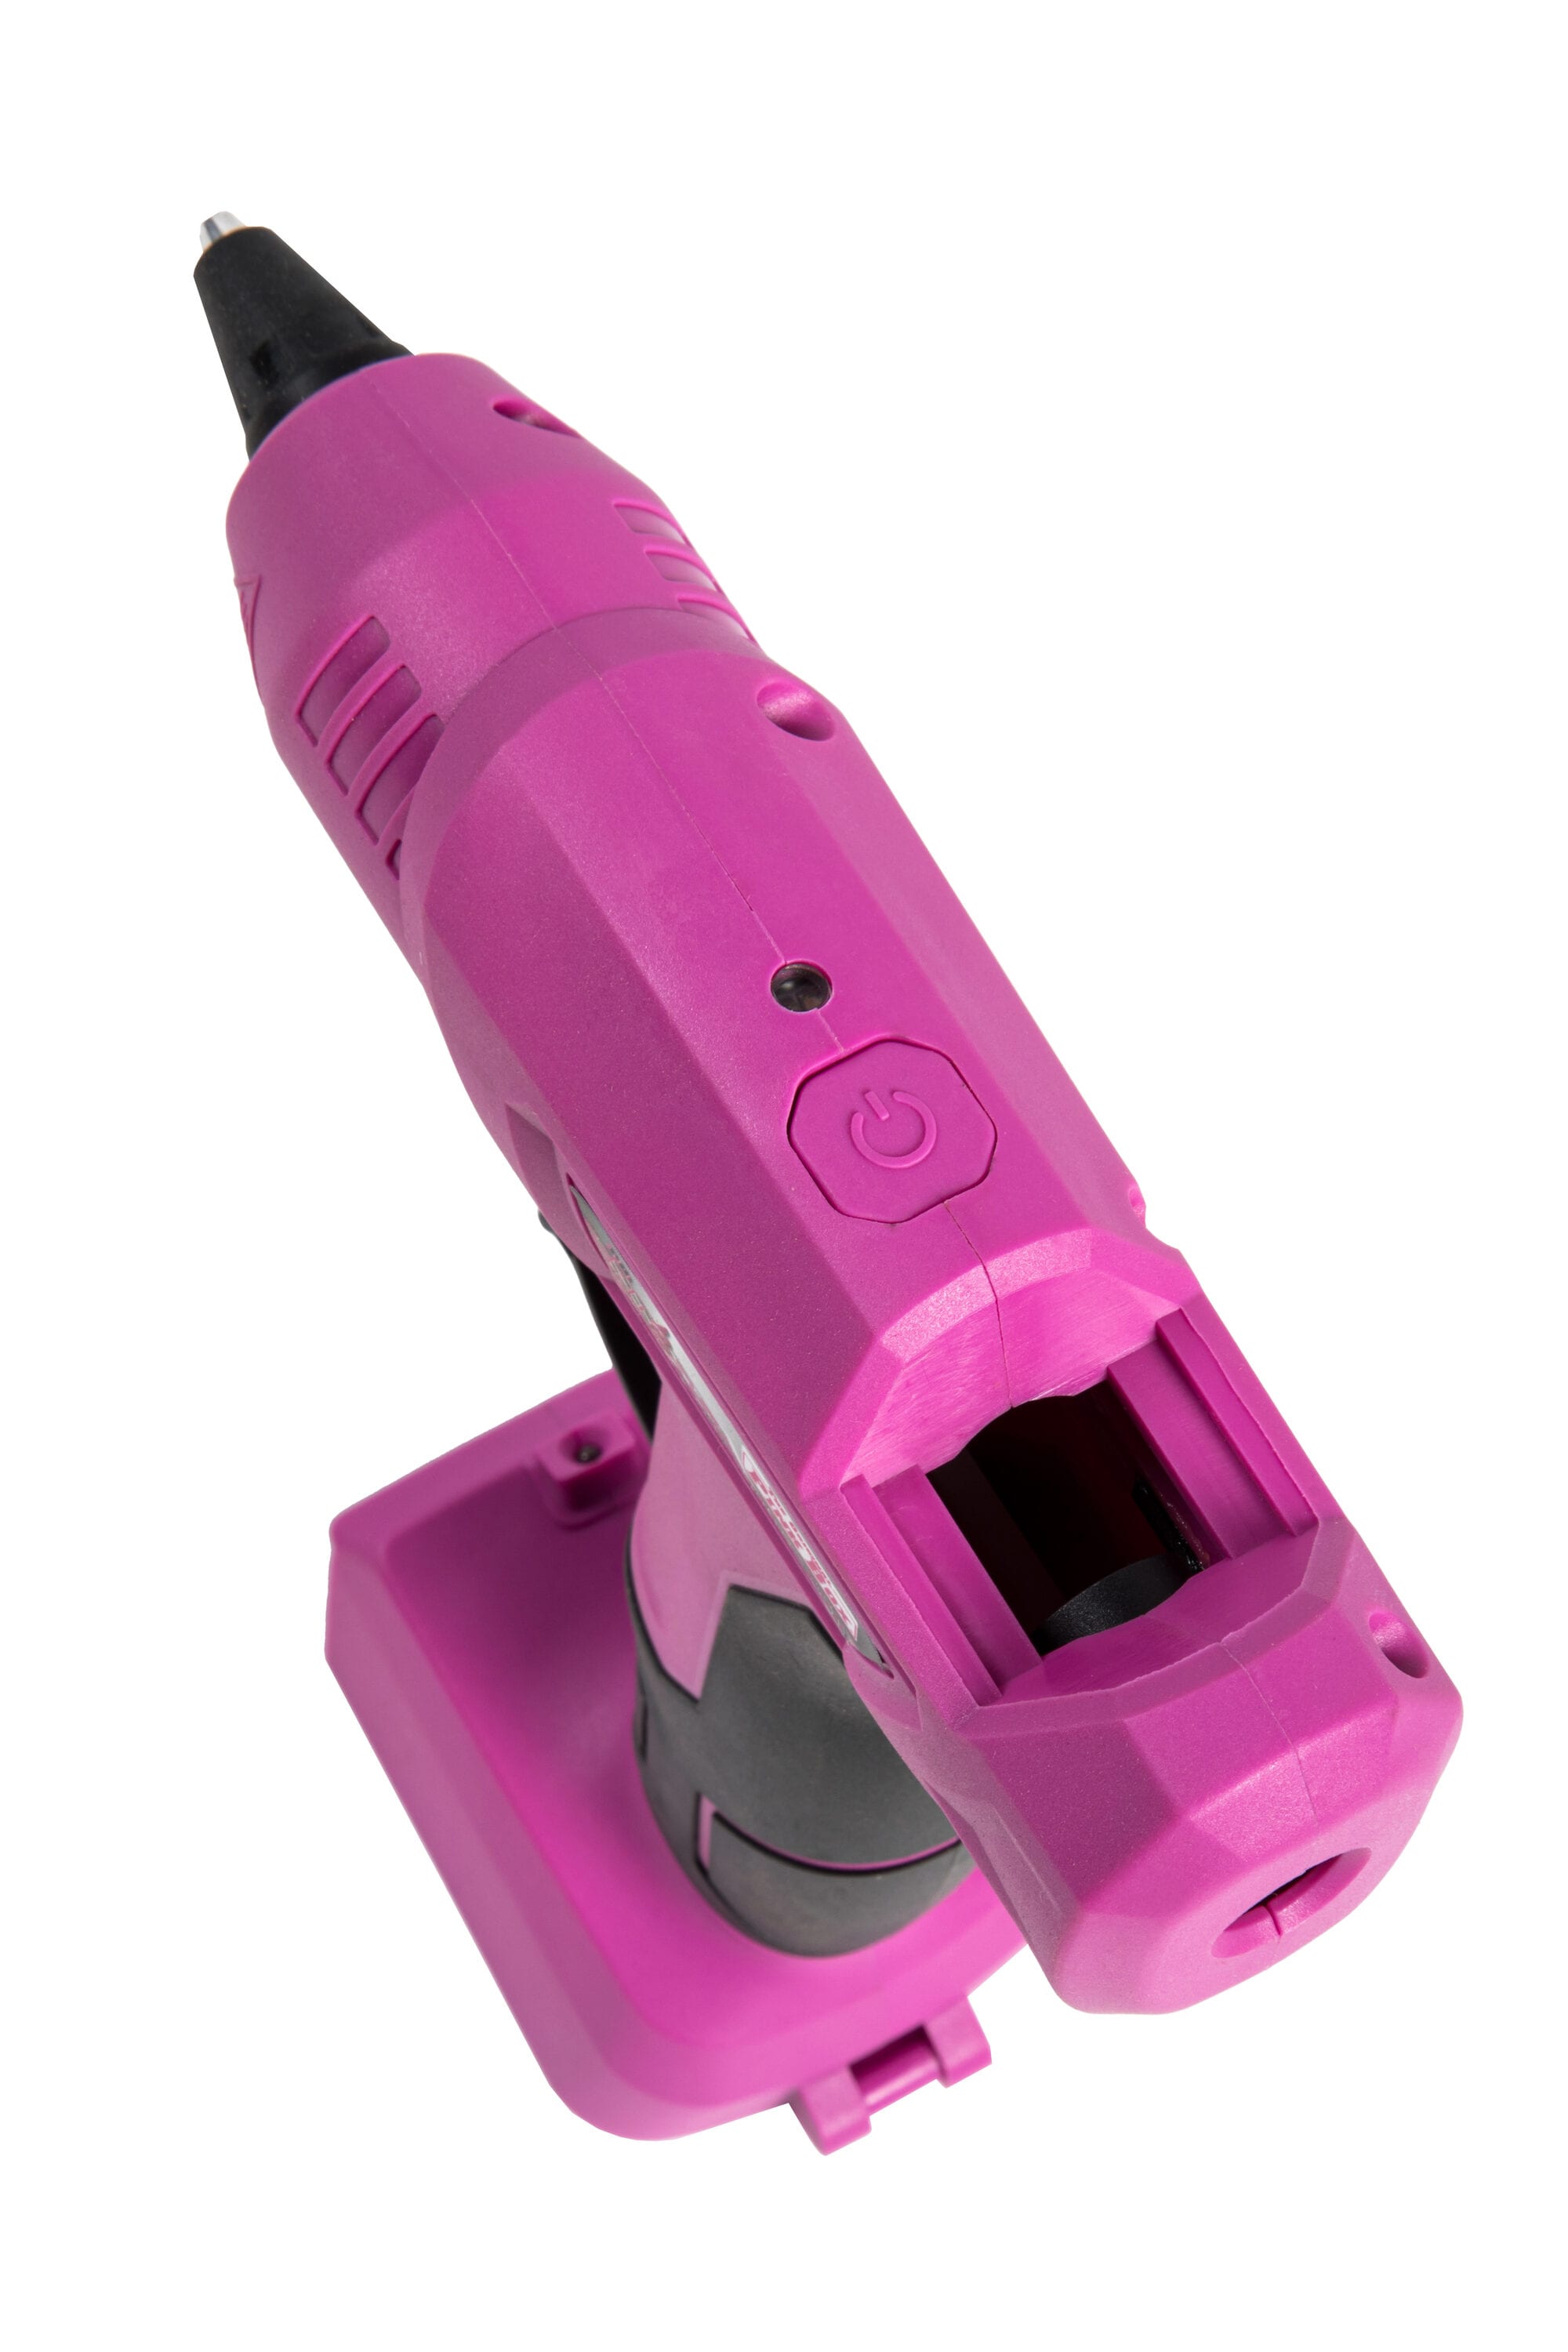 60W Pink Hot Glue Gun, Vastar Glue Gun for Crafts Denmark